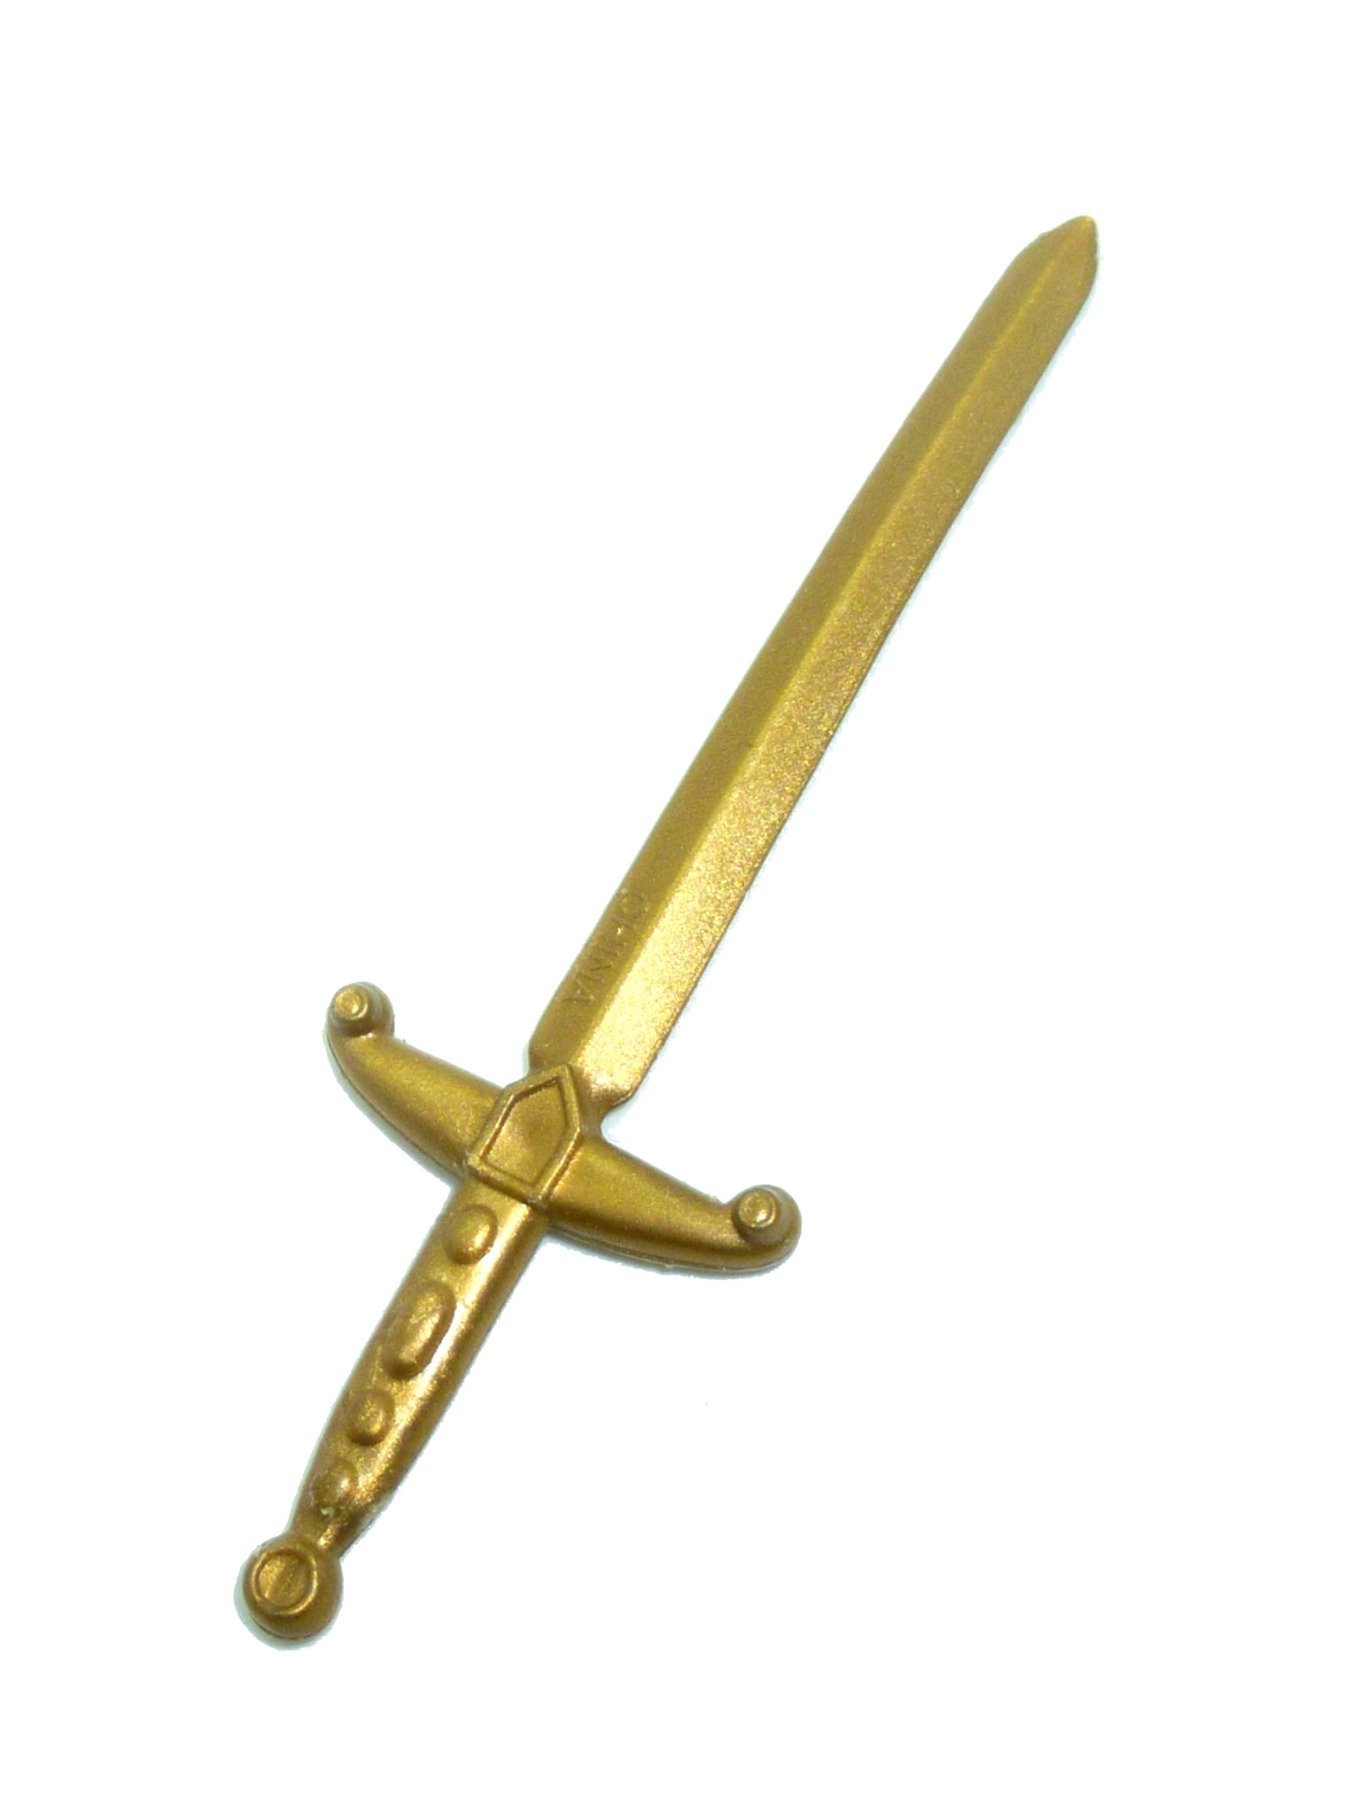 John Ratcliffe goldenes Schwert / Waffe Mattel 1995